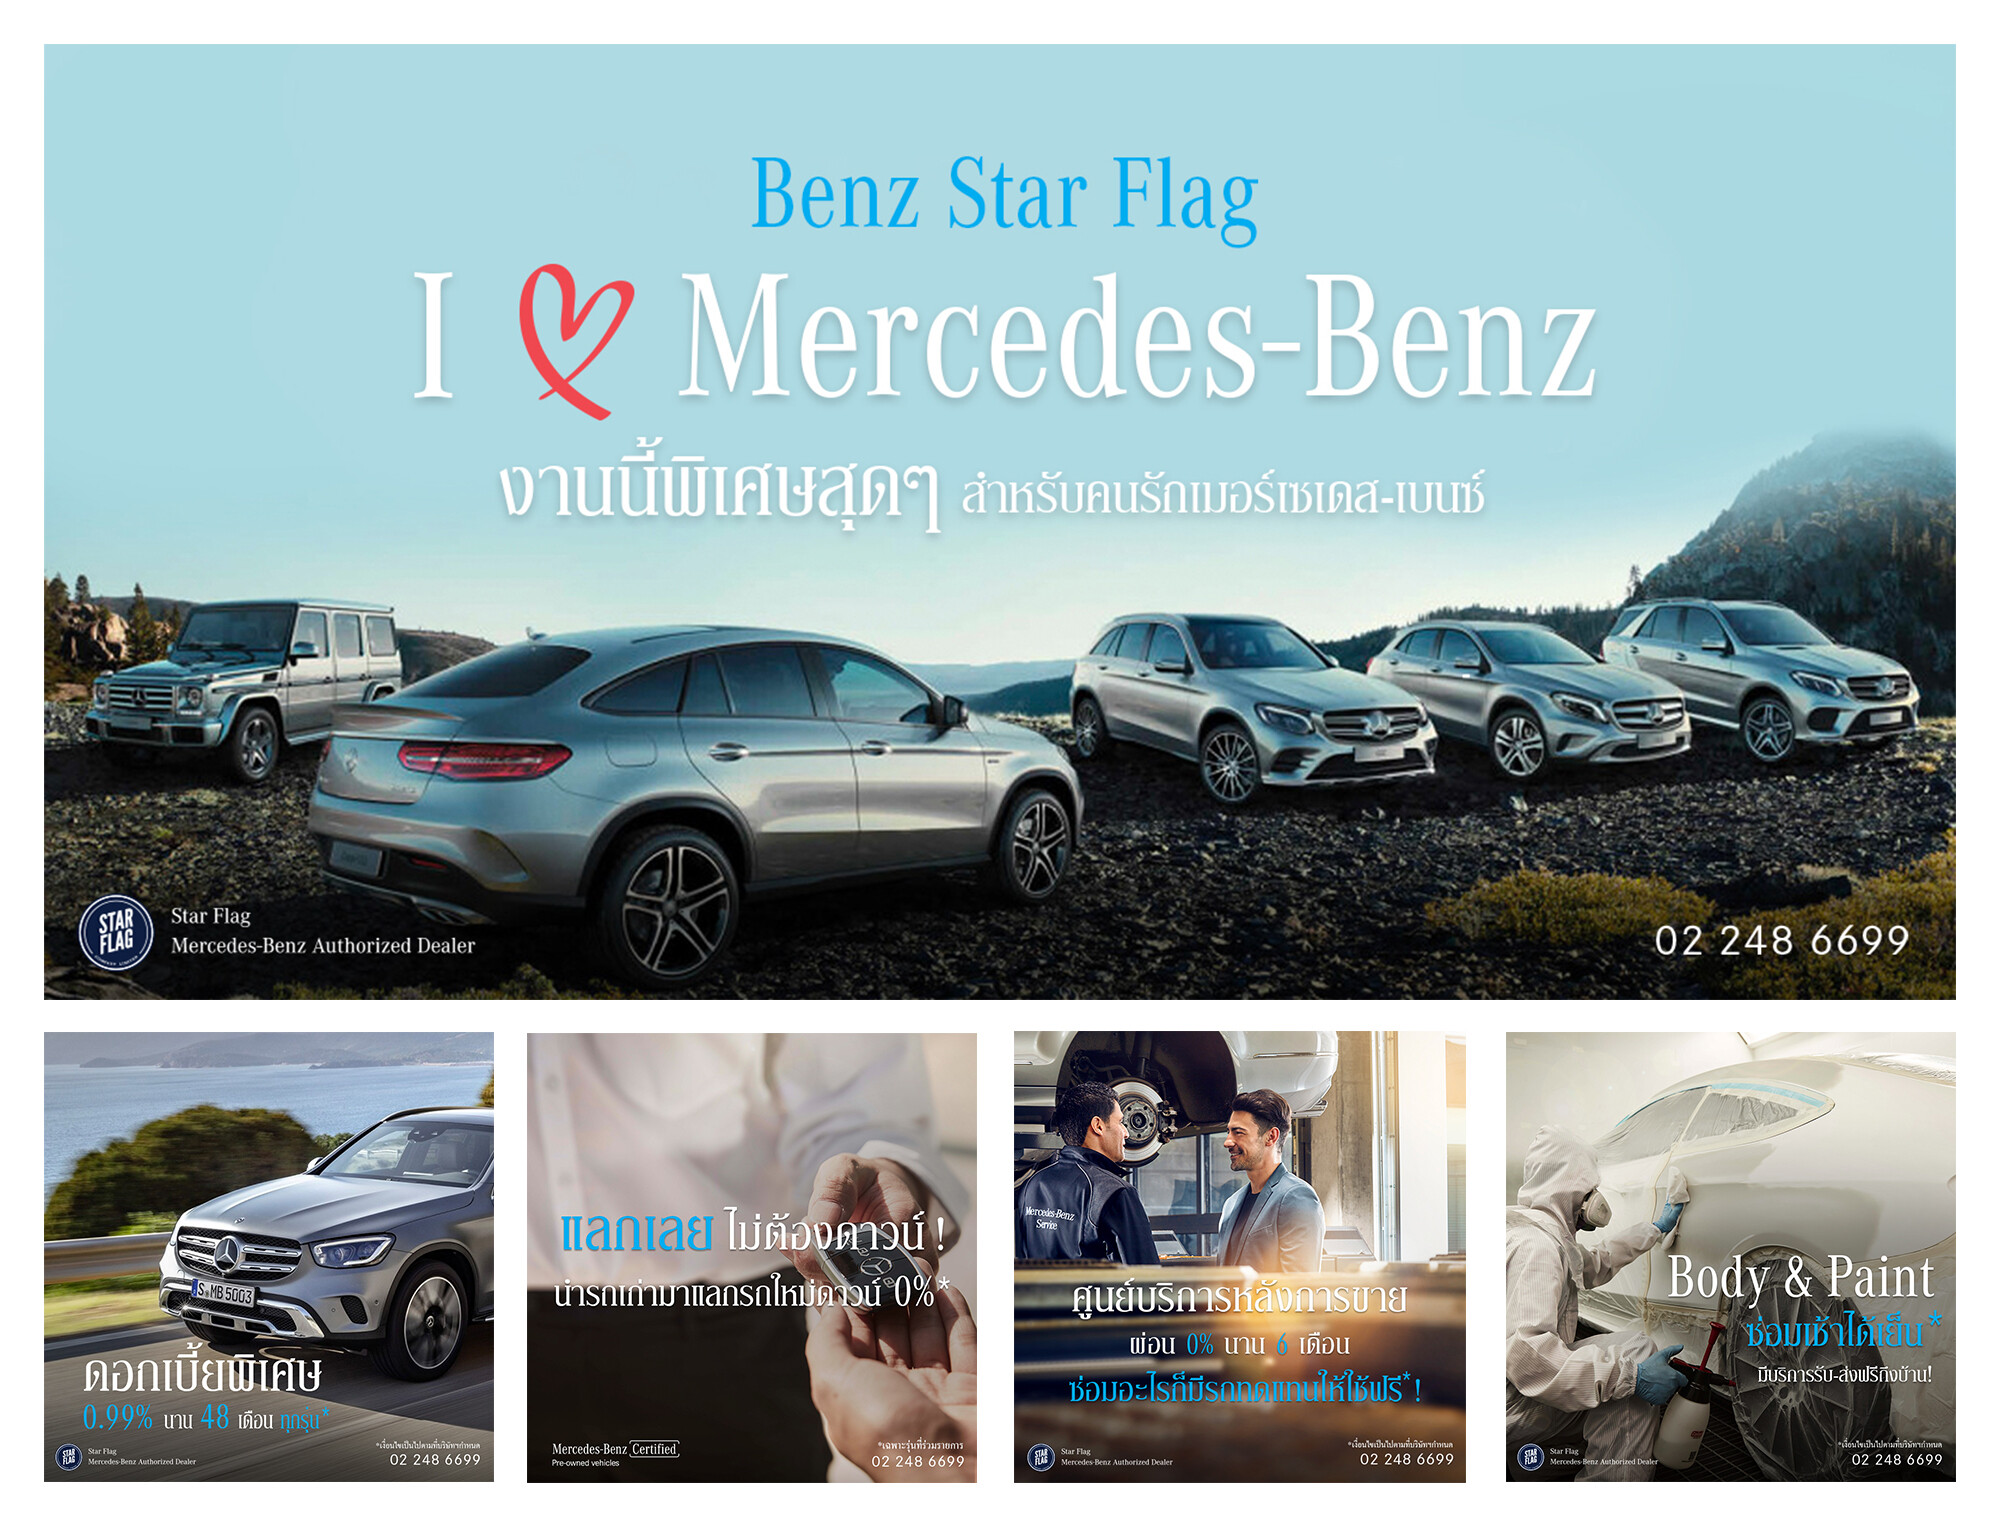 เบนซ์ สตาร์แฟลก เปิดตัว “I Love Mercedes-Benz งานนี้พิเศษสุดๆ ”แคมเปญที่รวมครบจบ เพื่อคนรักเมอร์เซเดส-เบนซ์ วันนี้-31 สิงหาคม 2563 นี้เท่านั้น